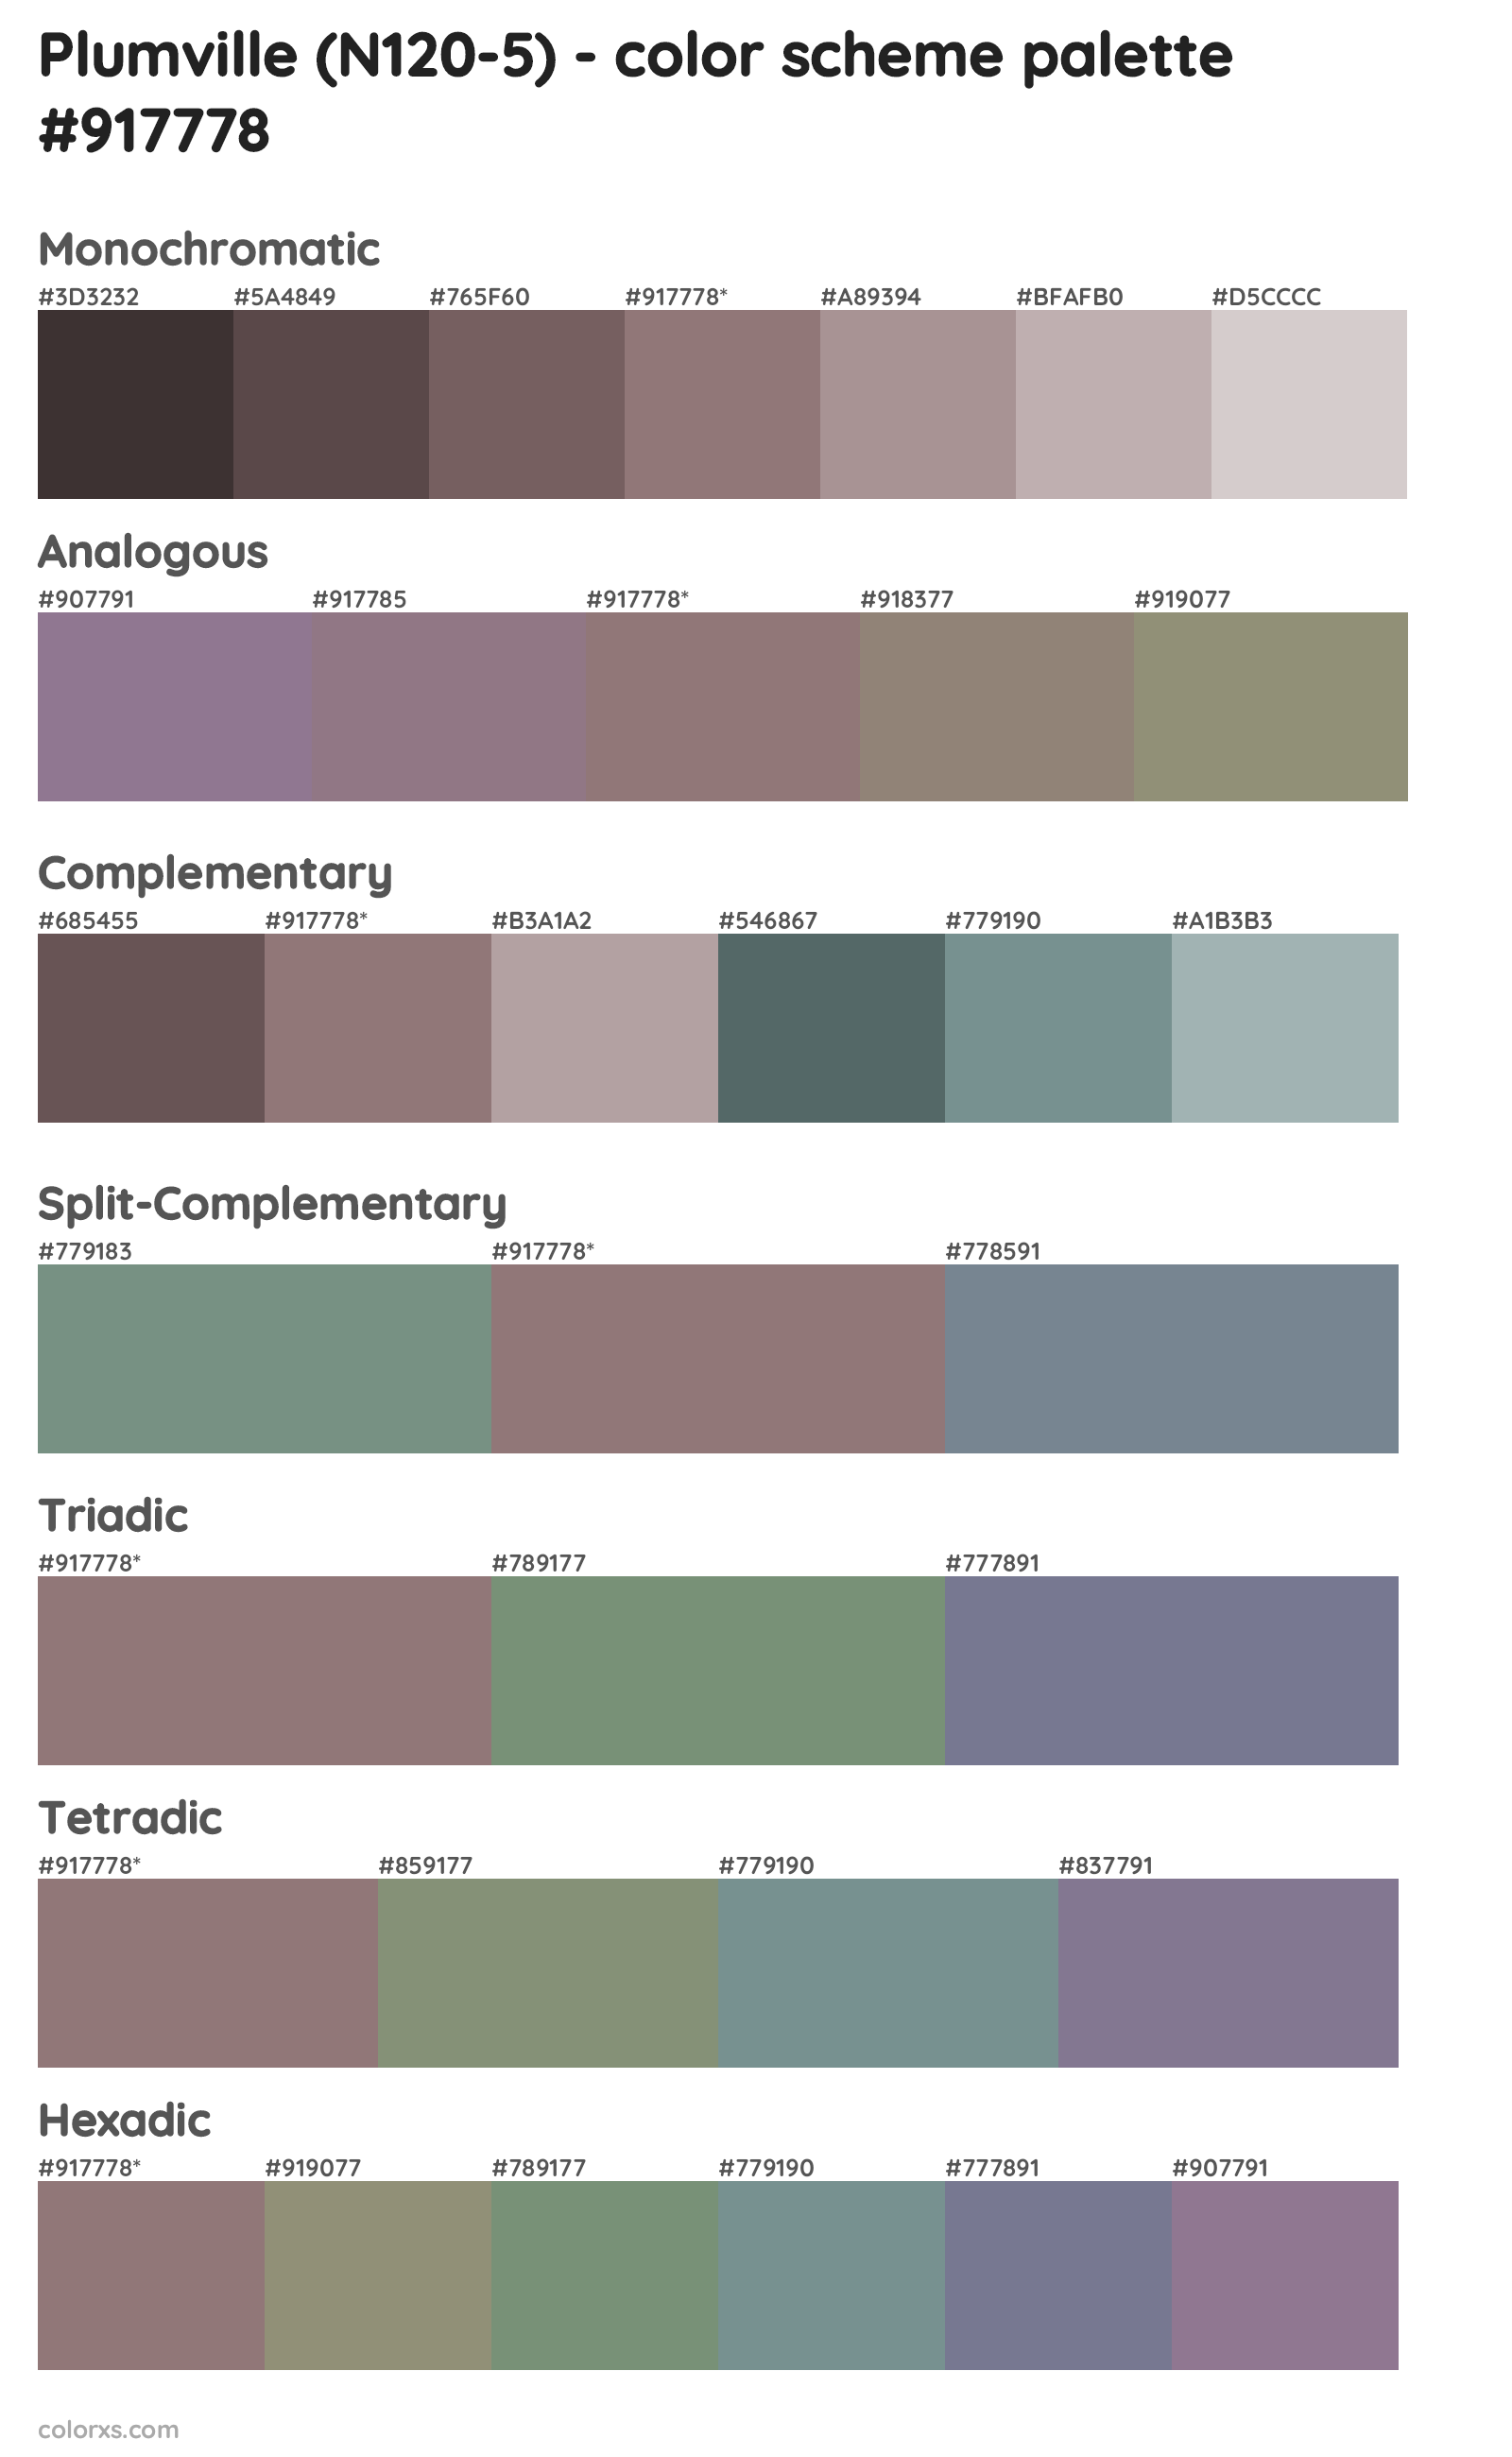 Plumville (N120-5) Color Scheme Palettes